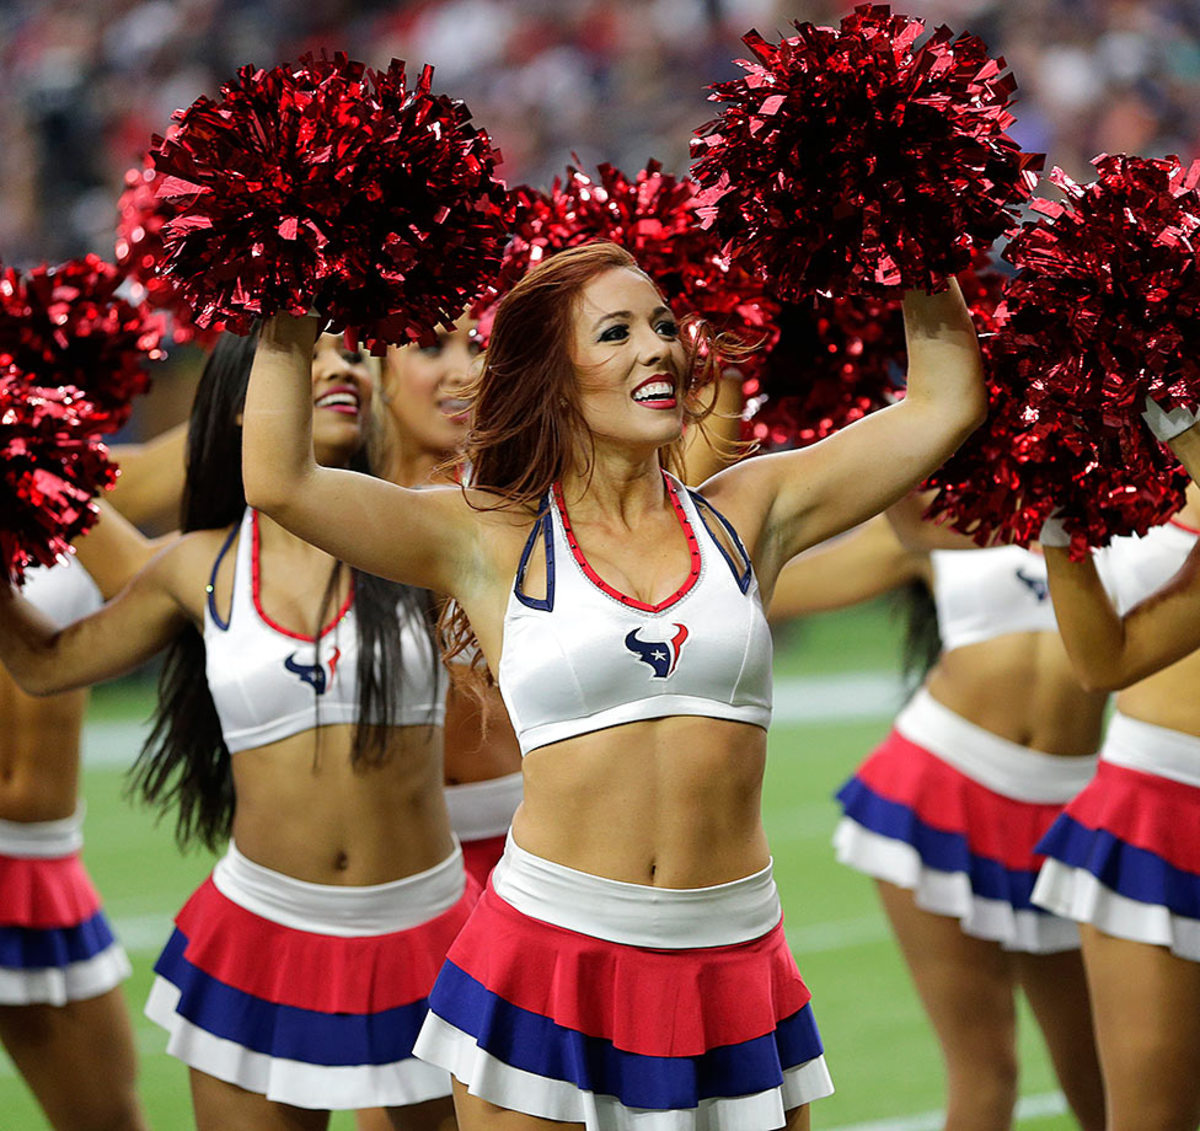 Houston-Texans-cheerleaders-AP_597155125216.jpg